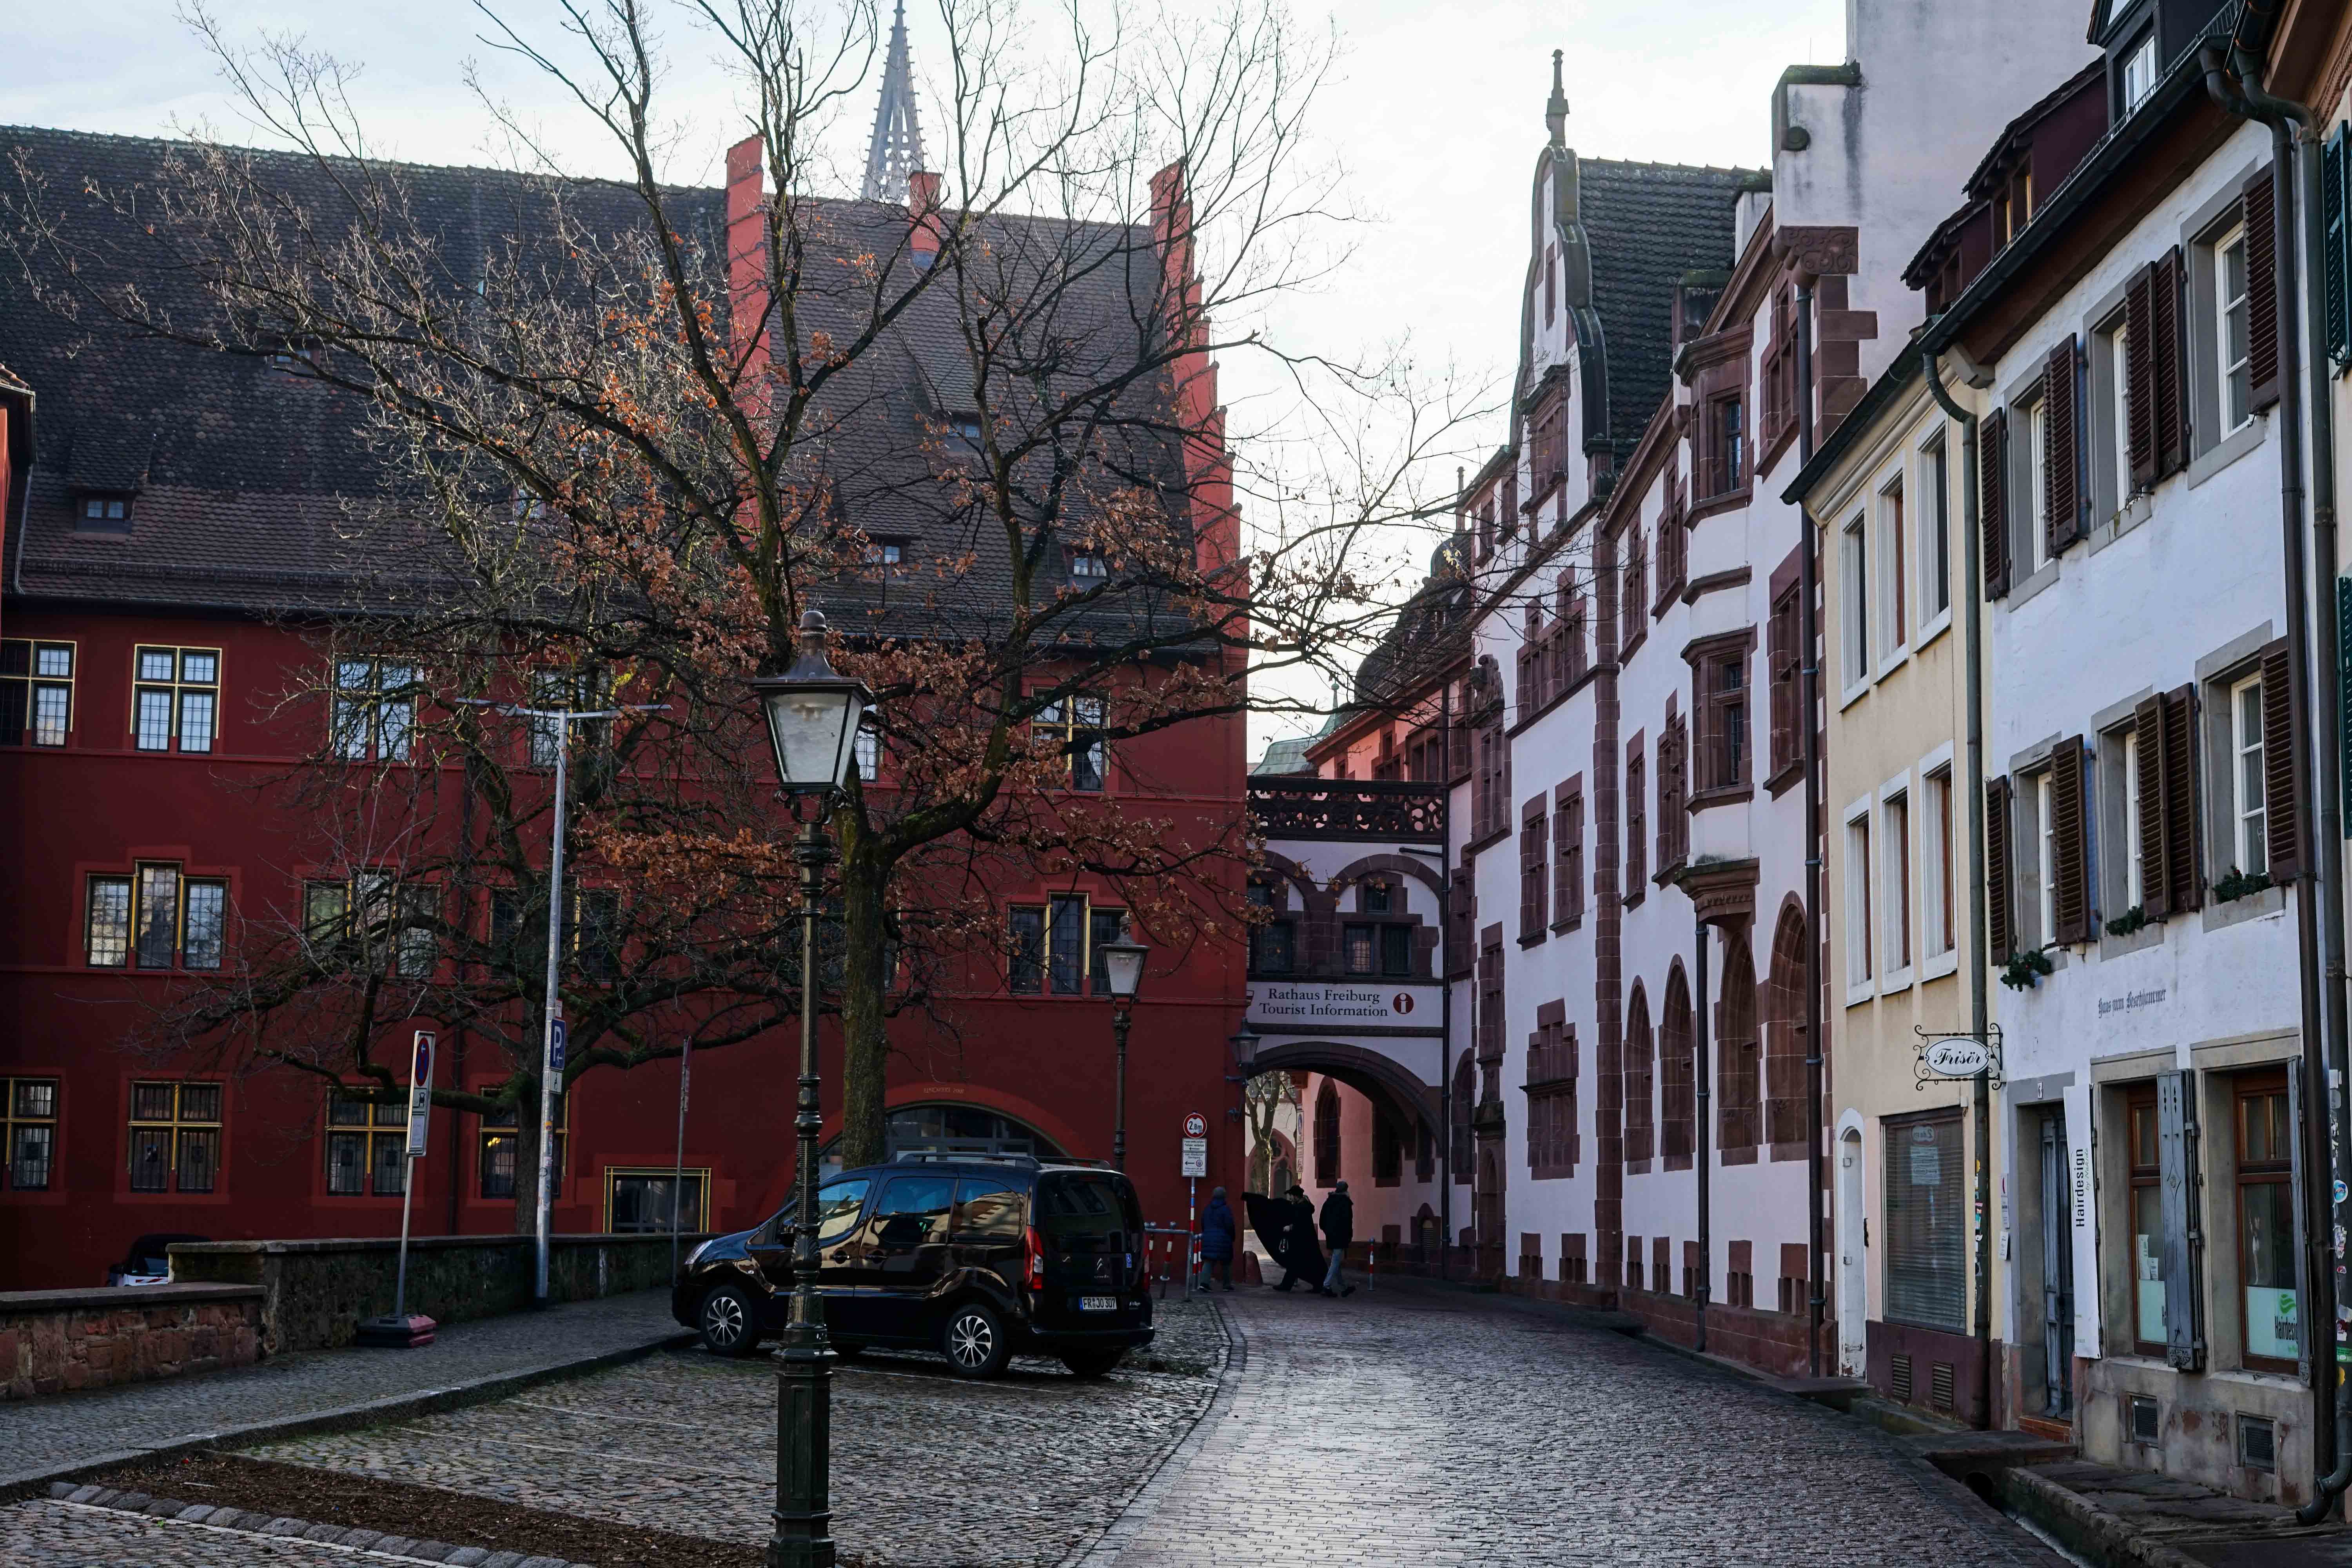 Freiburg Sehenswürdigkeiten Wochenendtrip Freiburg Altstadt altes Rathaus Reiseblog Freiburg Tipps